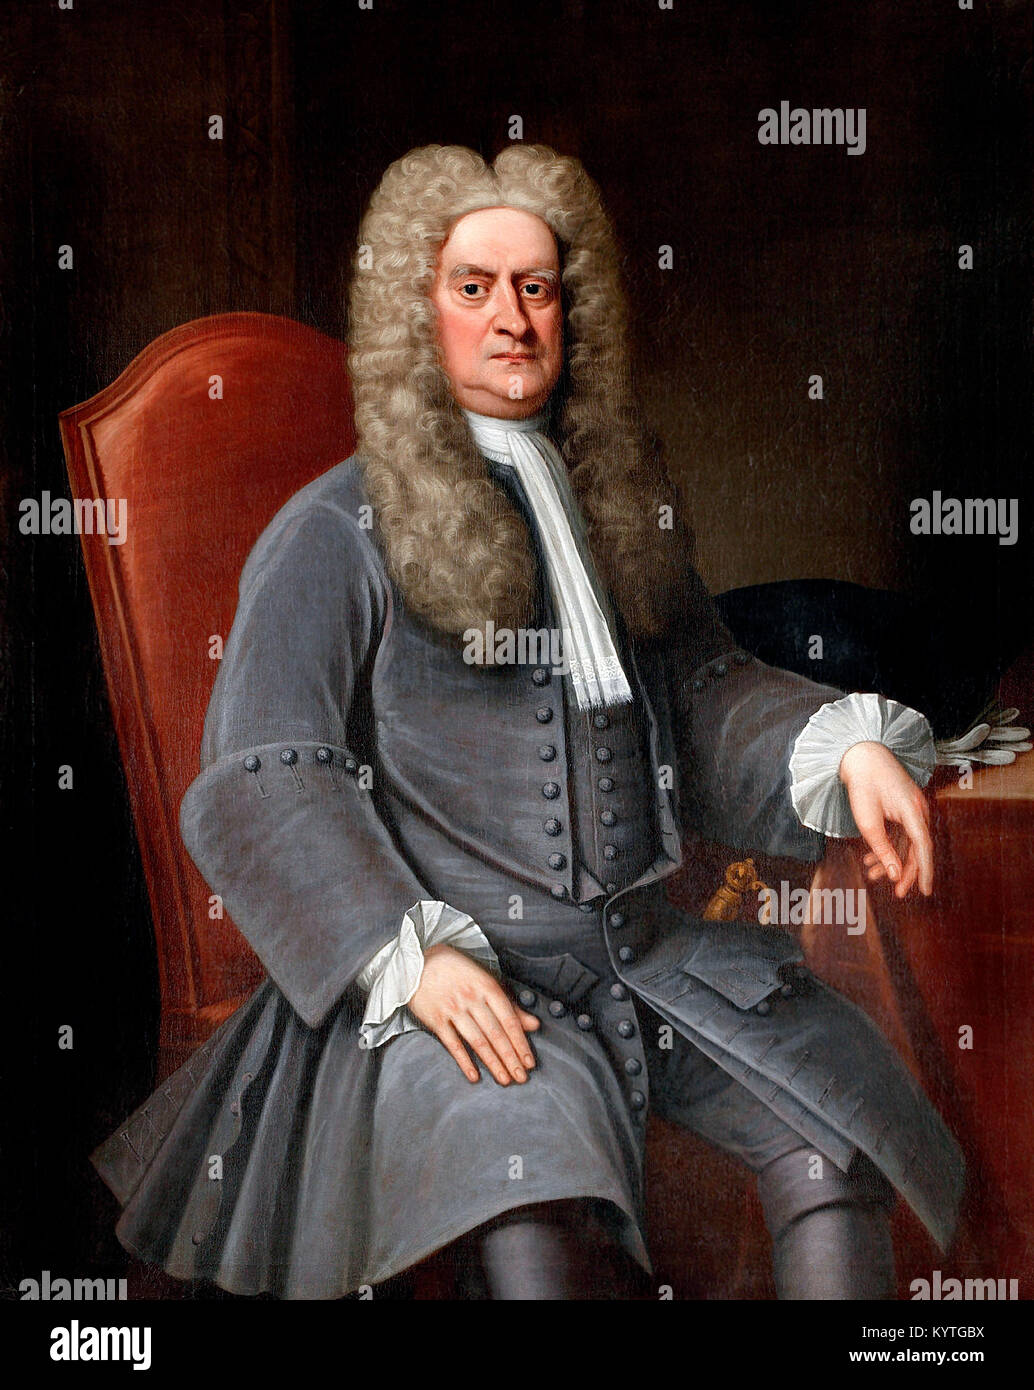 Sir Isaac Newton (1642-1727), portrait de la physicien et mathématicien anglais, c.1715-20 Banque D'Images